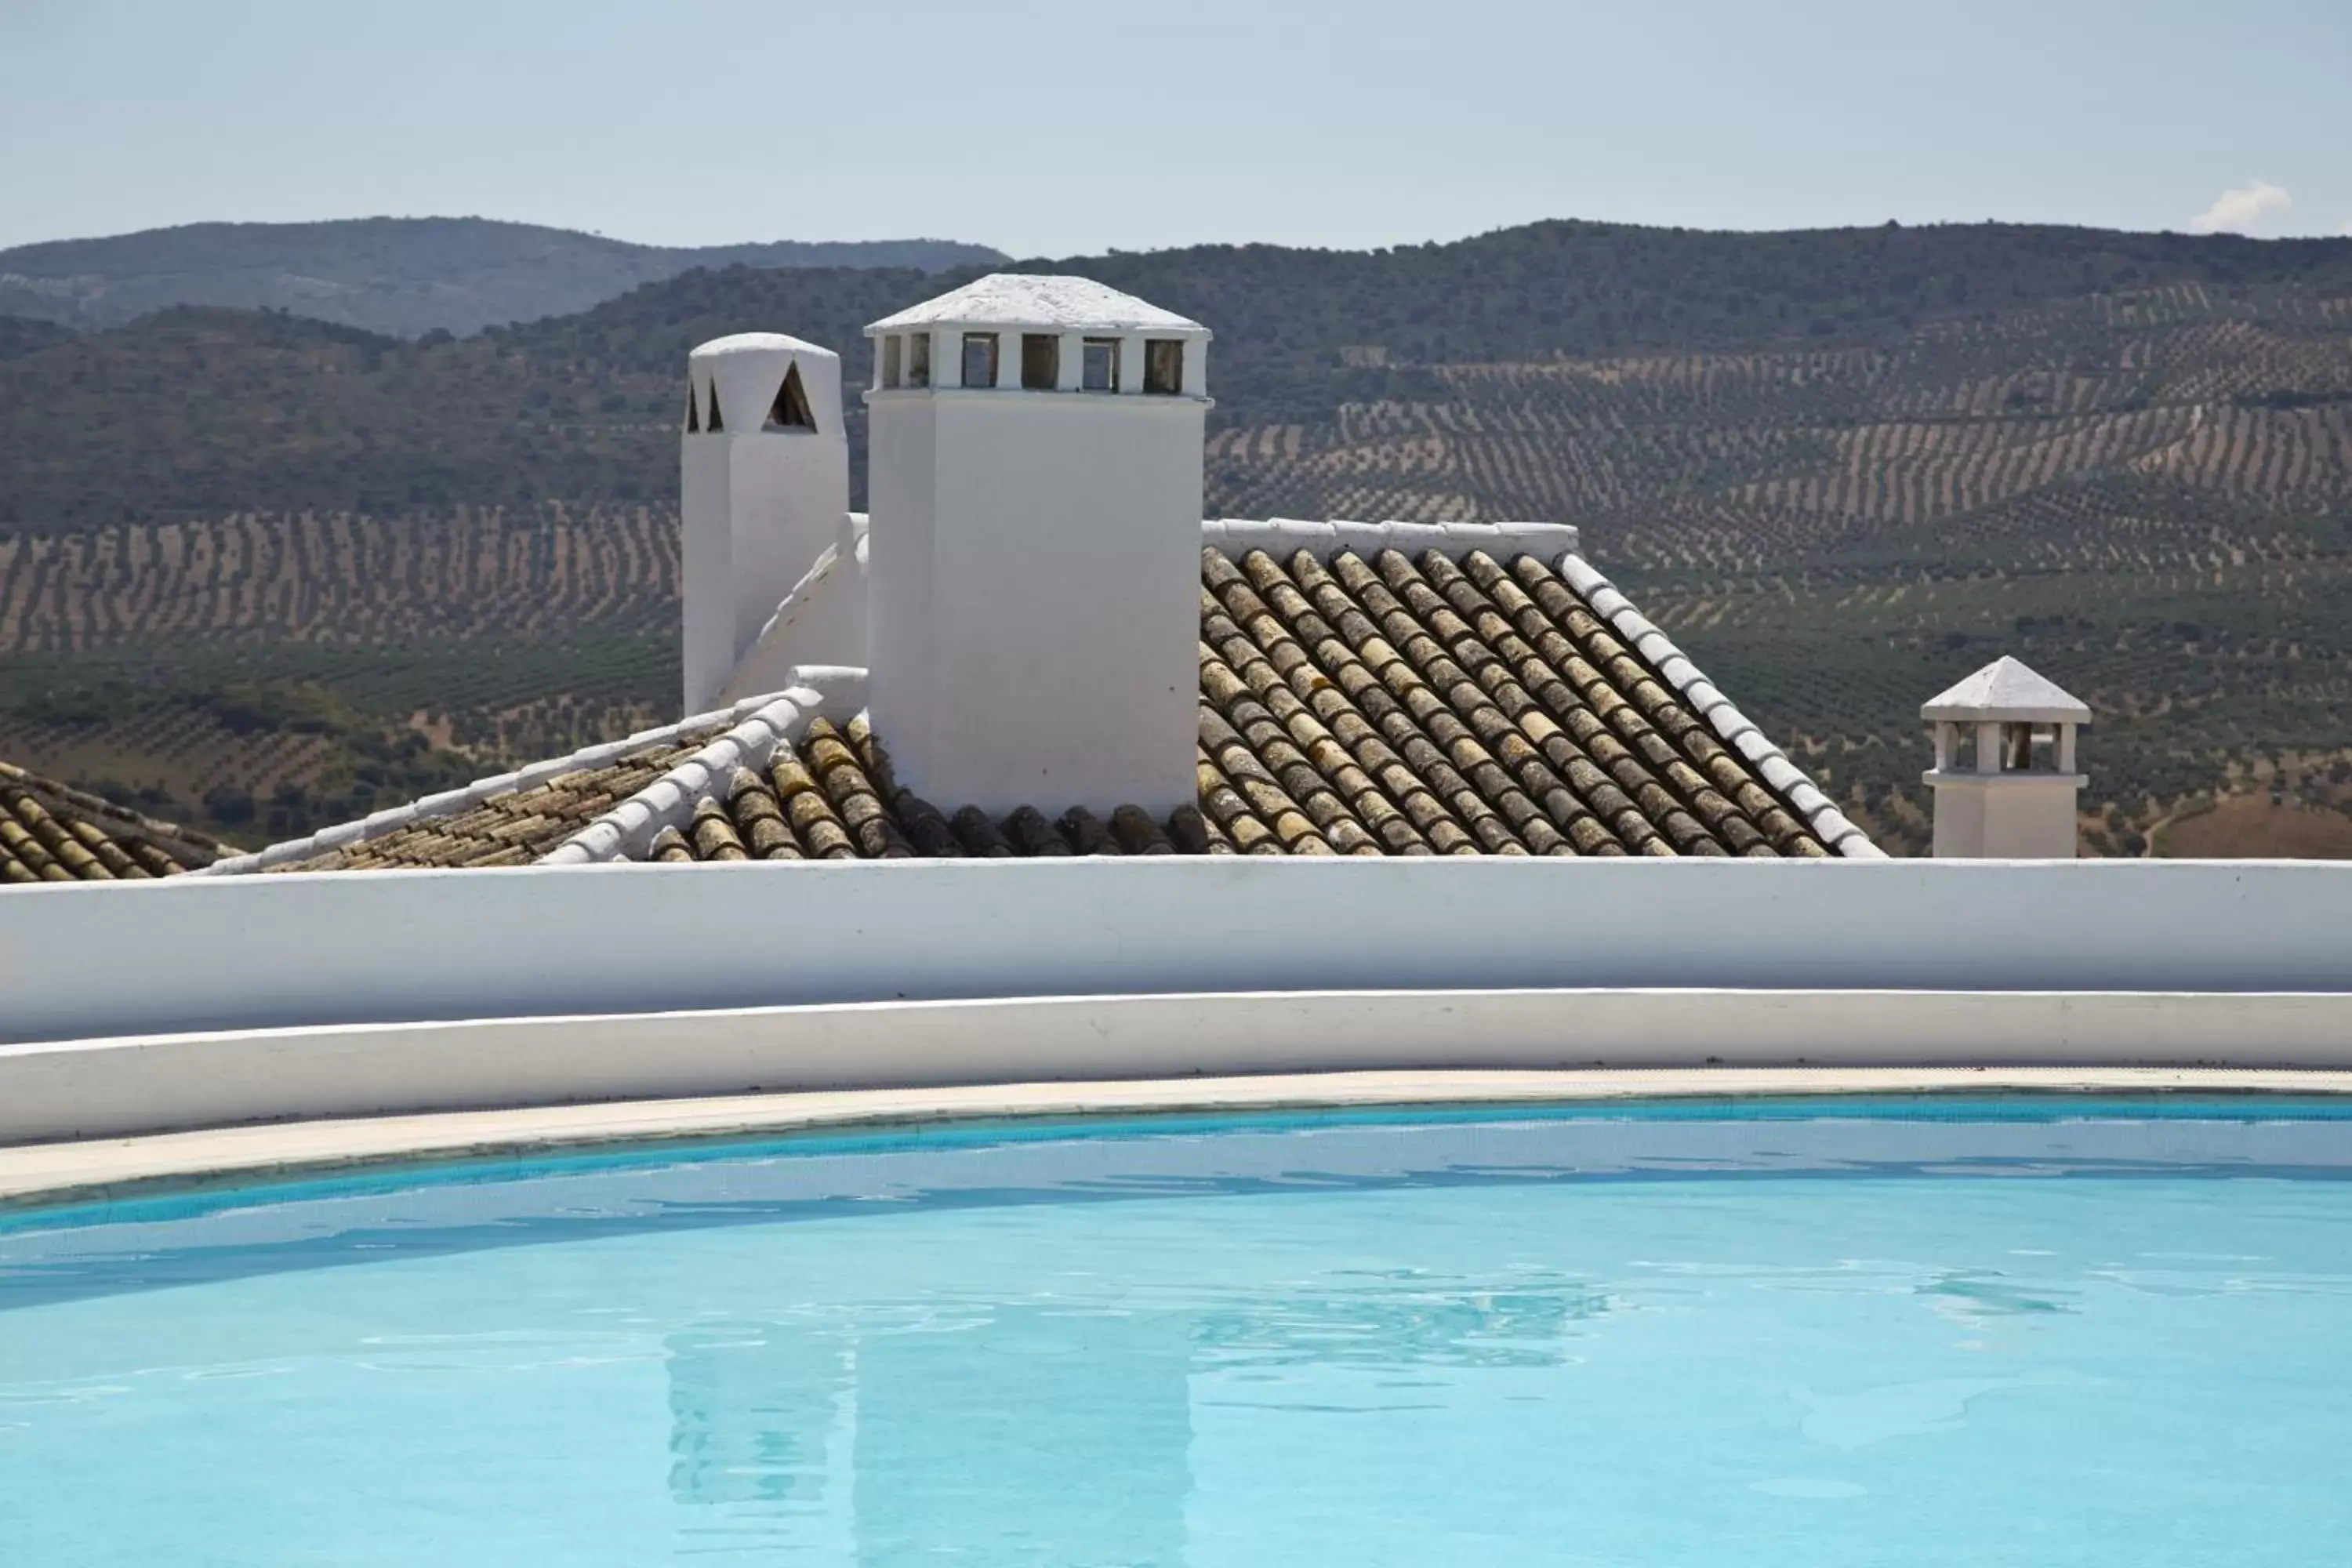 On site, Swimming Pool in Villa Turística de Priego